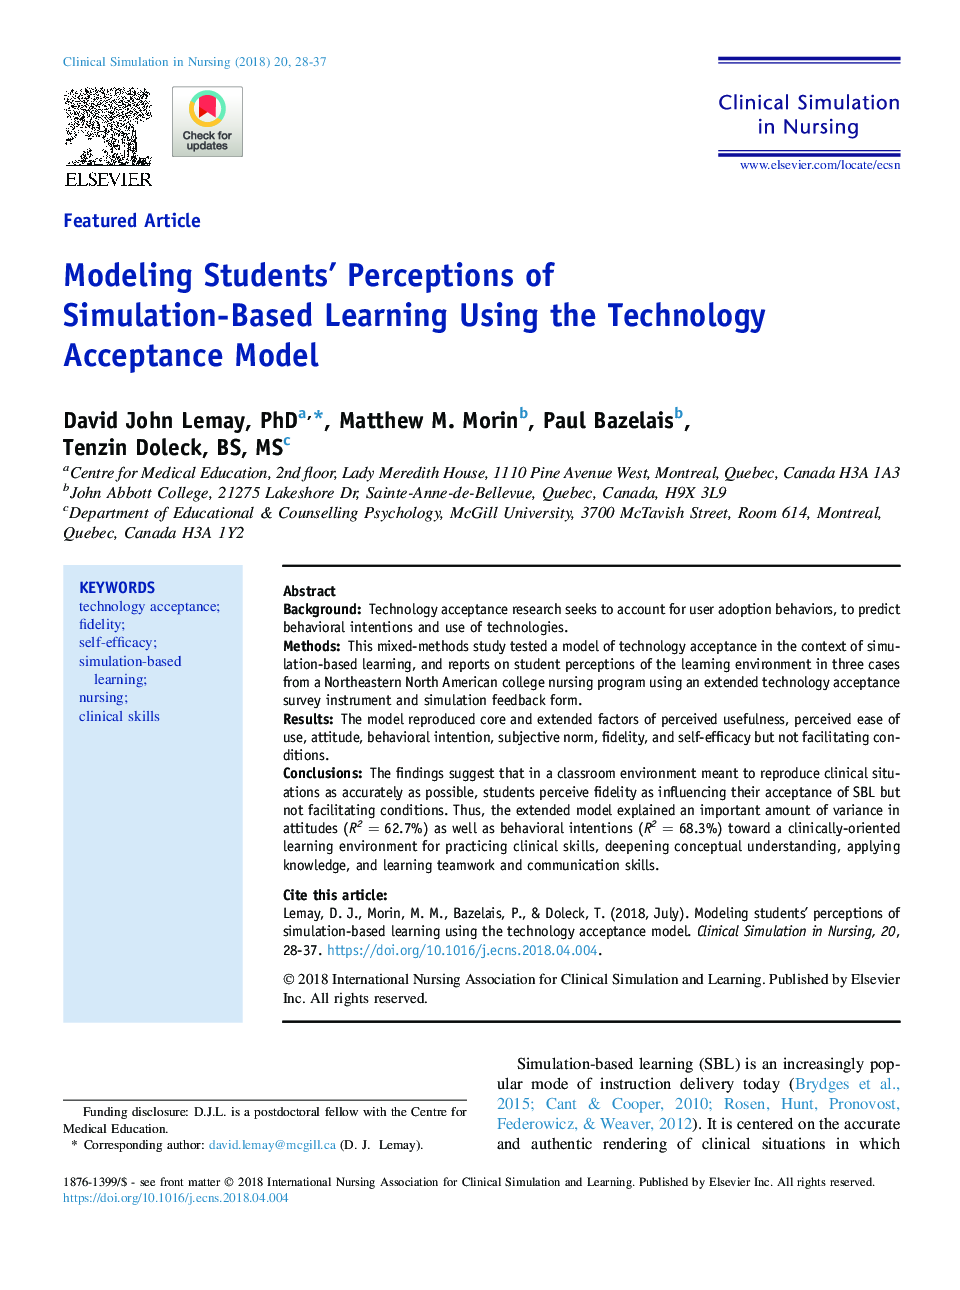 مدل سازی درک دانشجویان از آموزش مبتنی بر شبیه سازی با استفاده از مدل پذیرش فناوری 